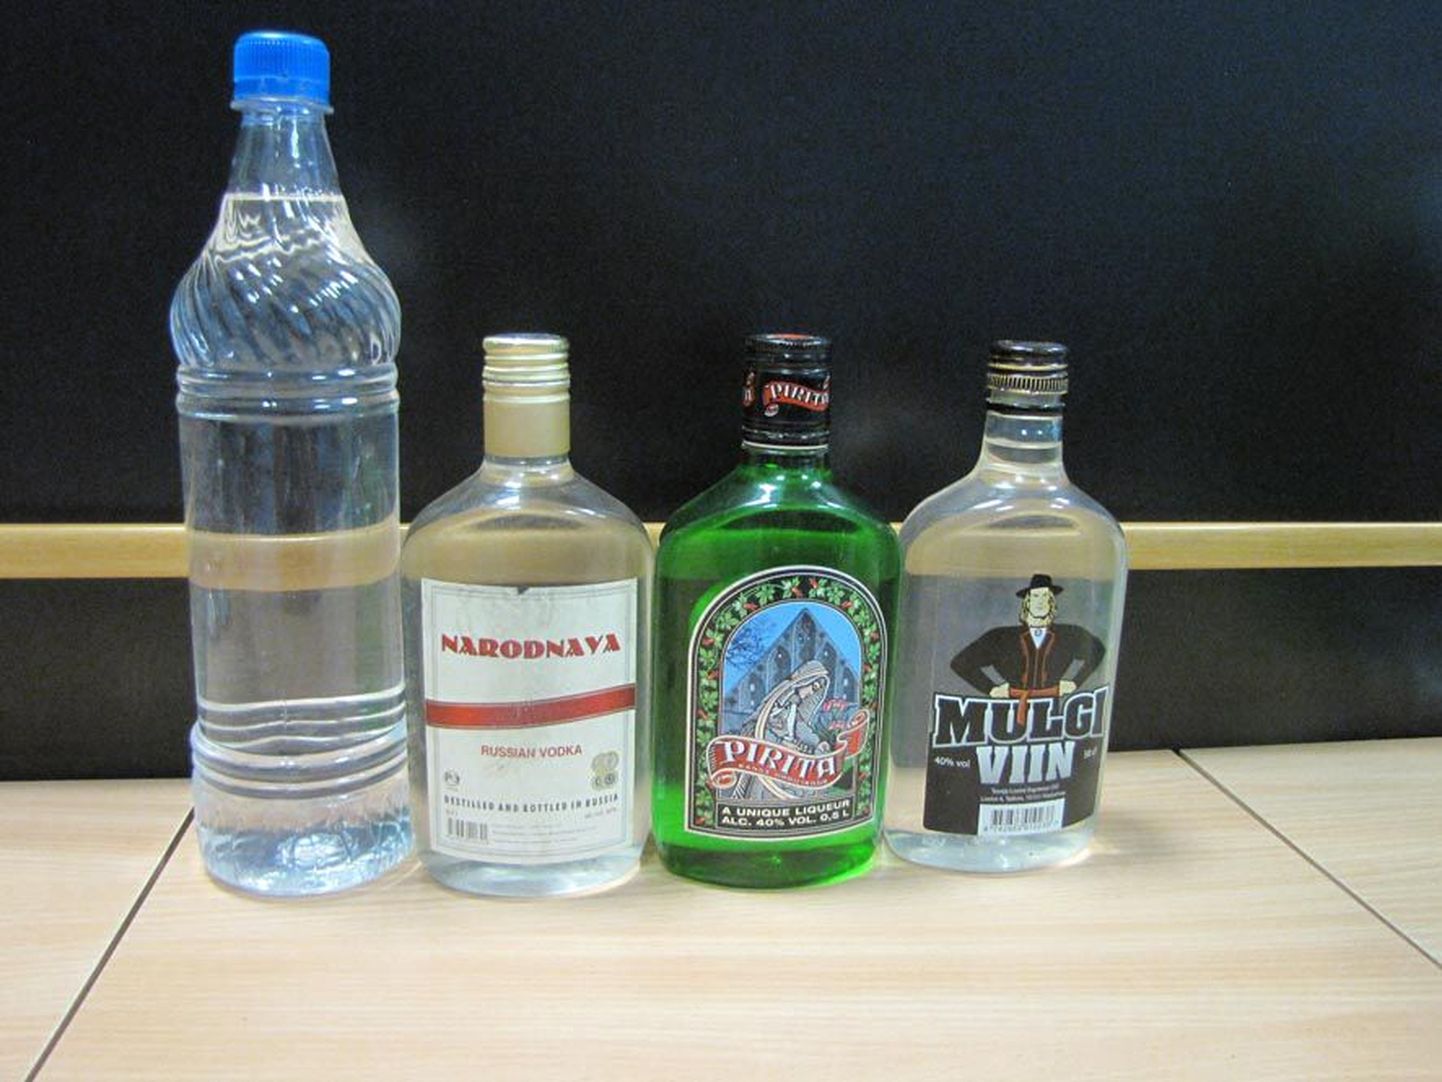 Nendes pudelites hoidis naine piirituselõhnalist vedelikku, mida ei tohi juua.